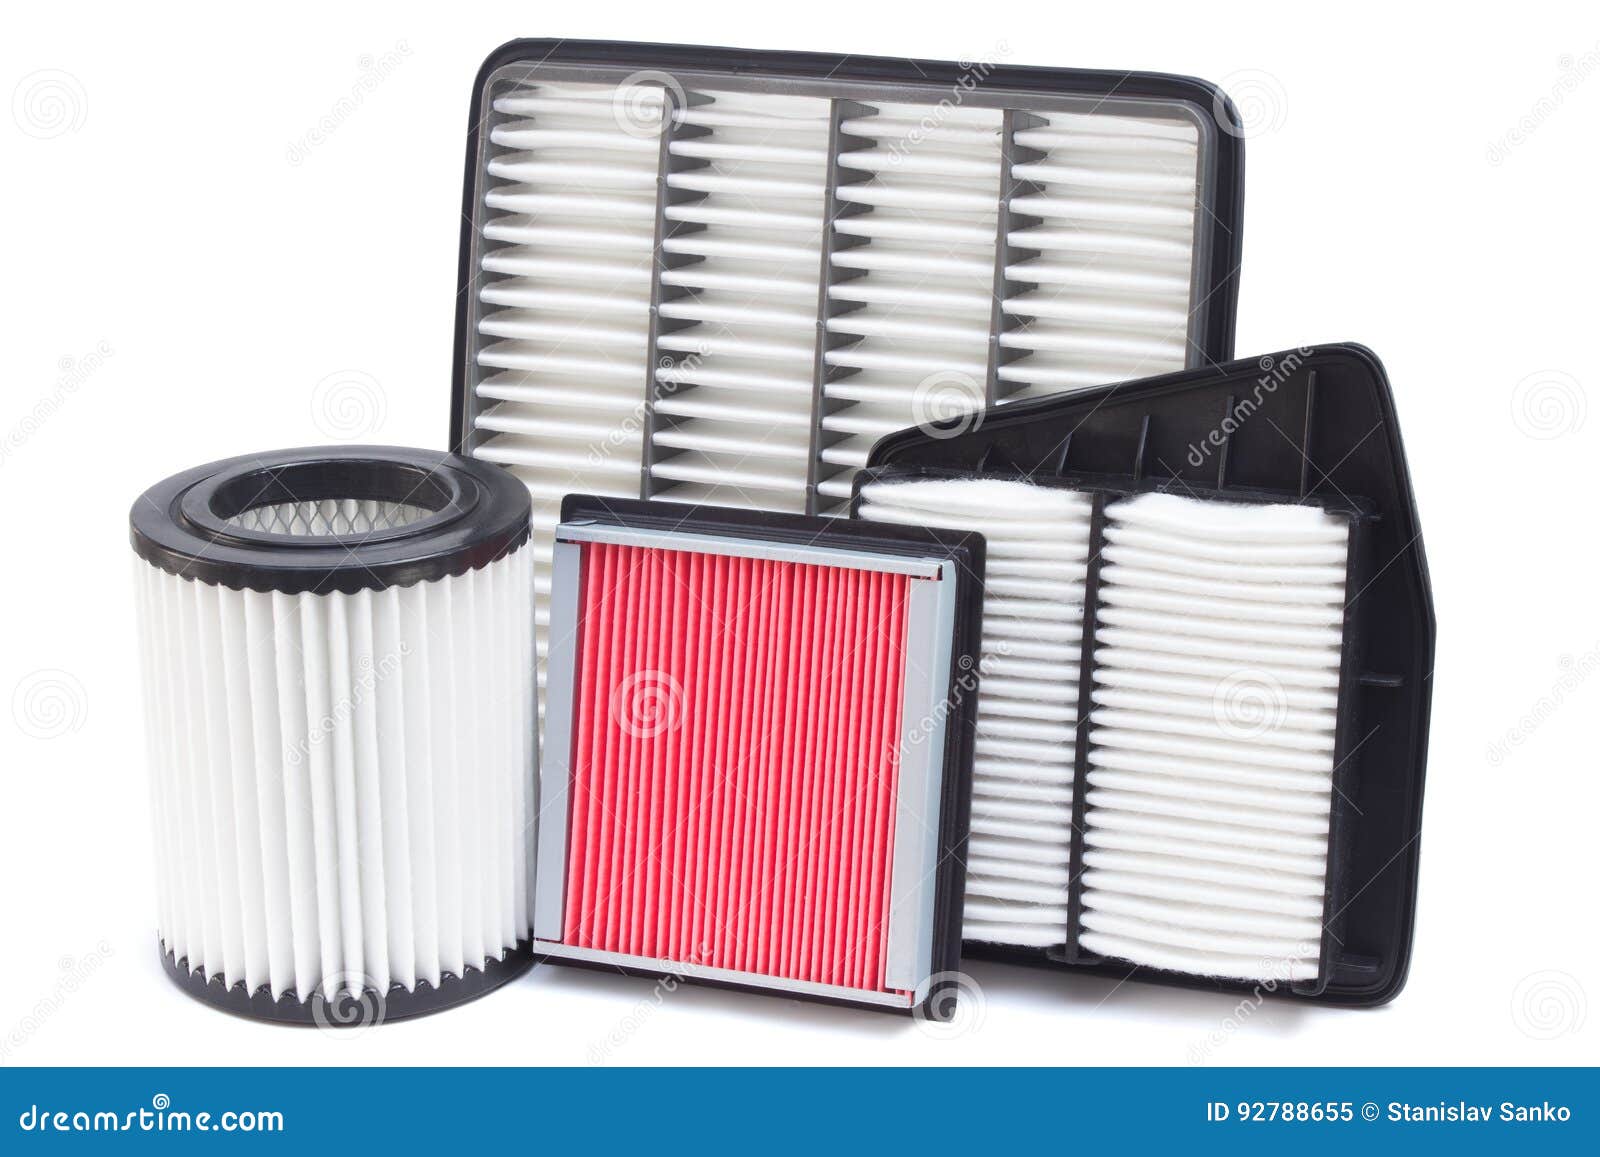 rijstwijn vacuüm Catastrofaal Car filters stock image. Image of mechanical, paper, industry - 92788655